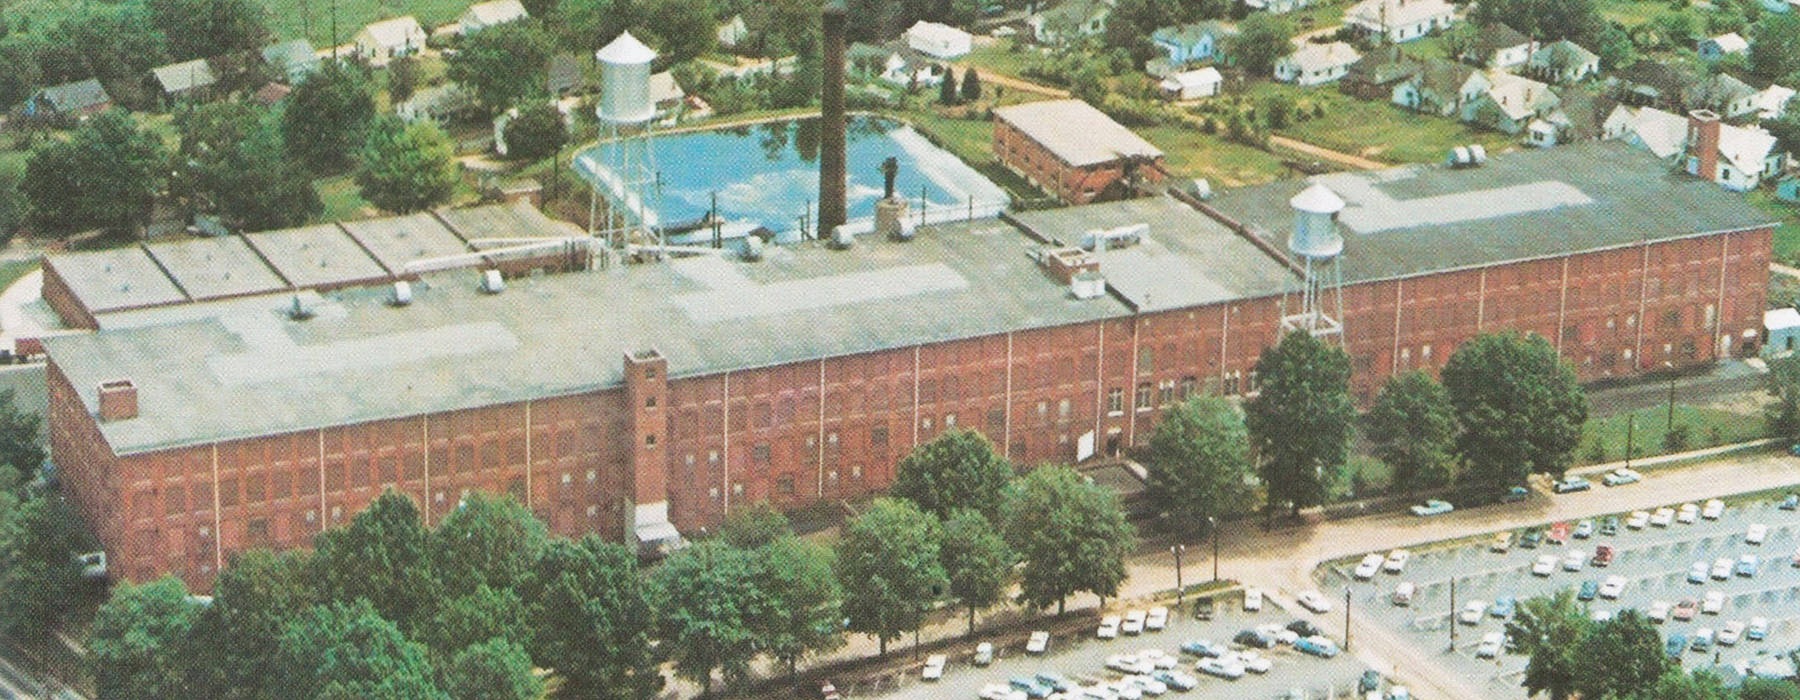 Woodside Mill factory